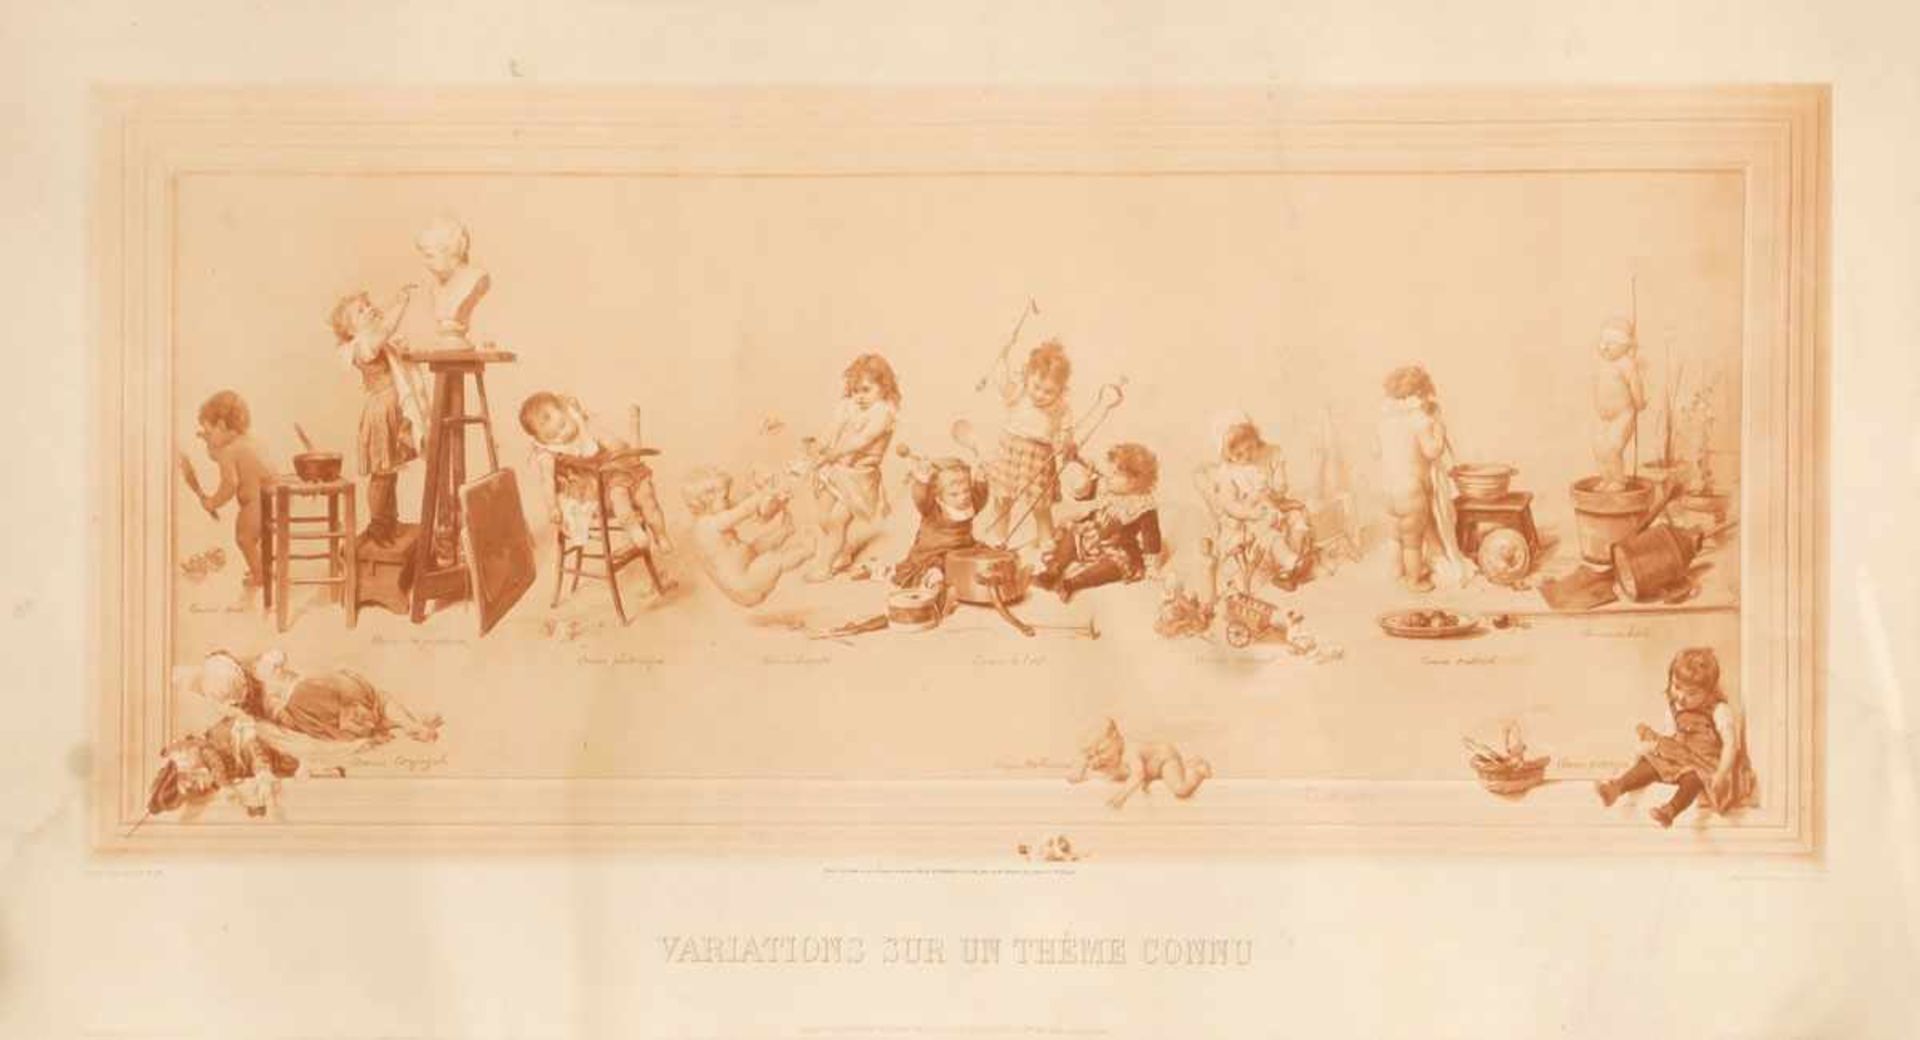 Timoléon Lobrichon1831 Cornod - 1914 Paris nach - "Variations sur un thème connu" - Fotogravure.